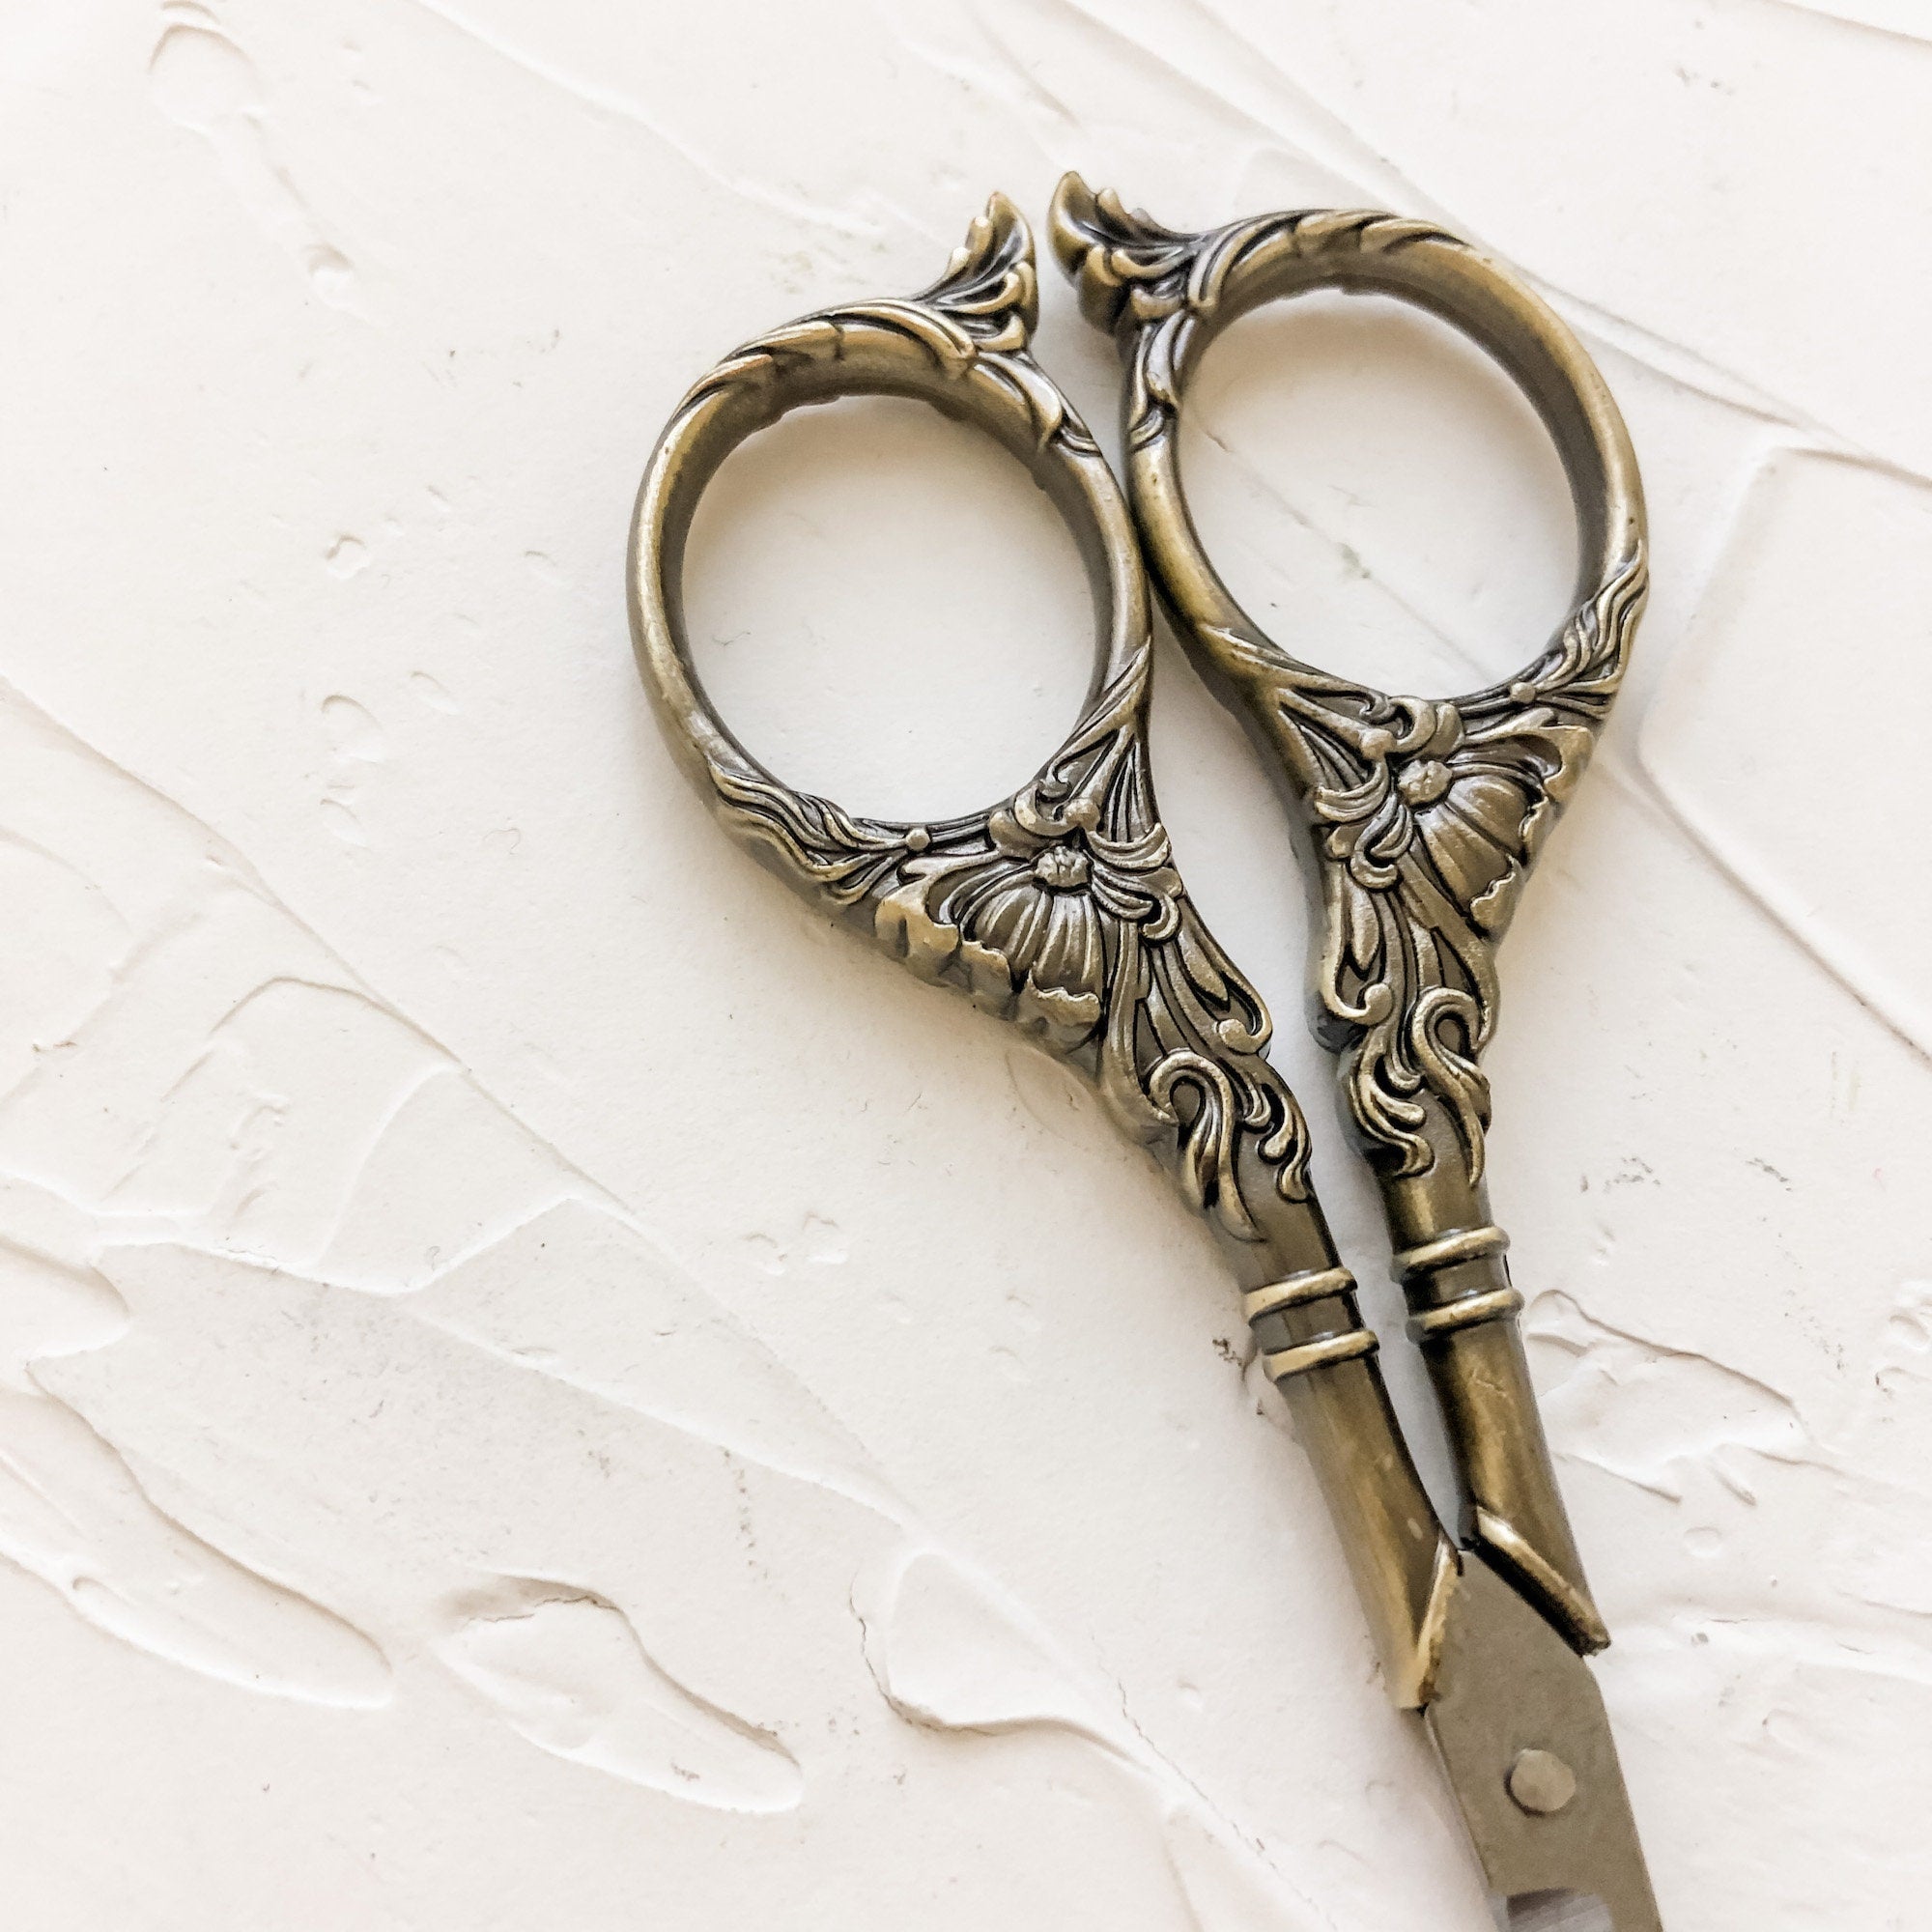 2pcs Vintage Scissors Decorative Components